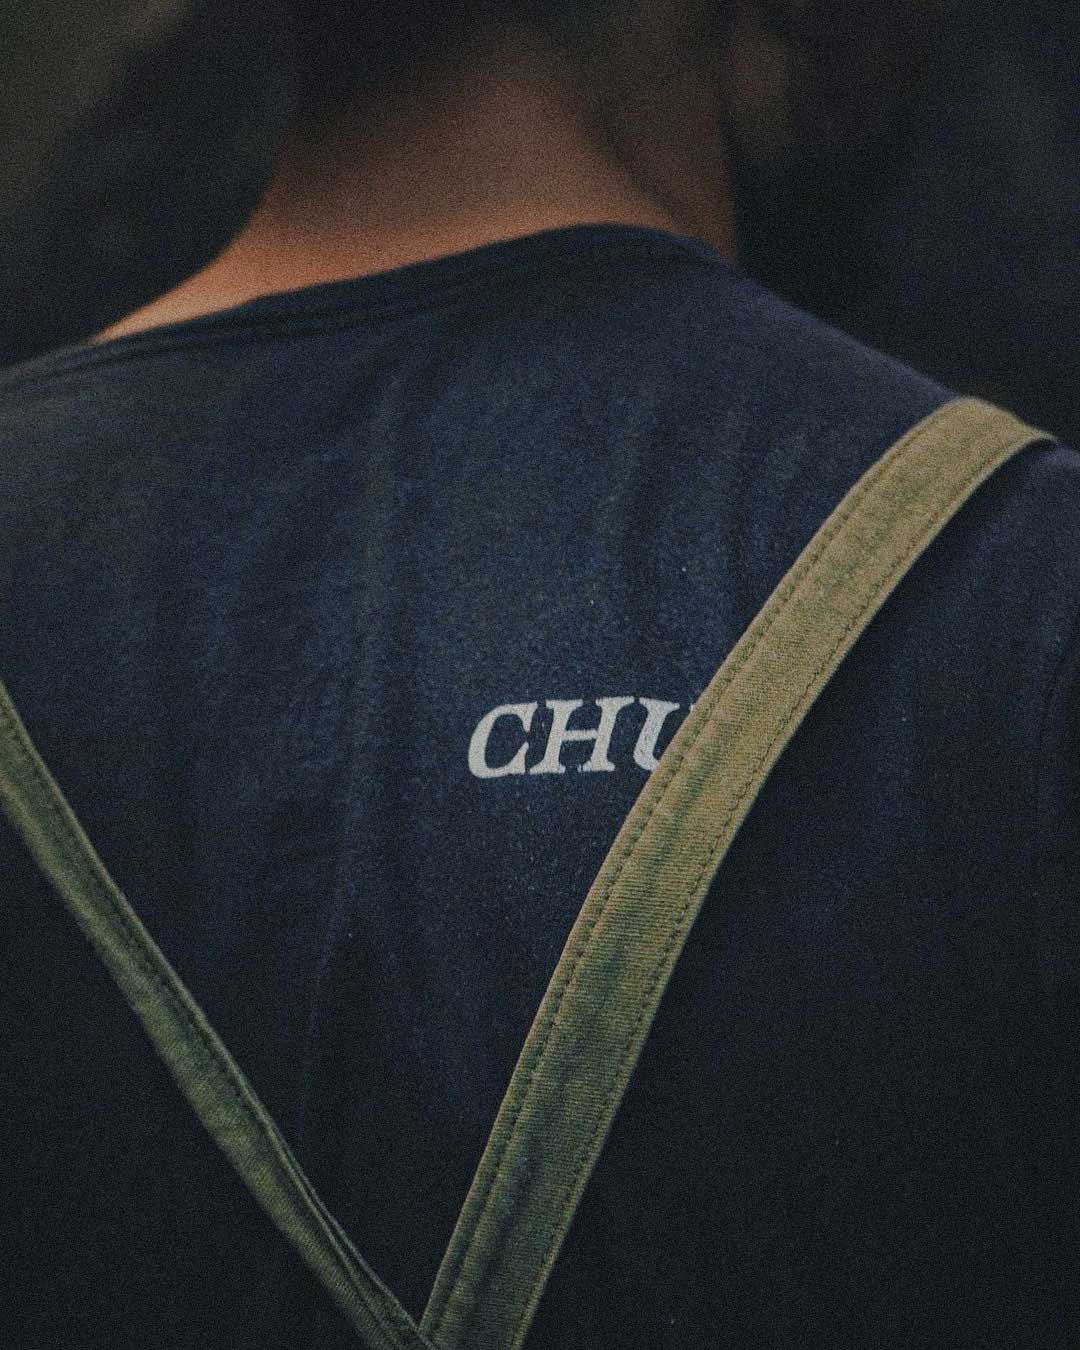 chui-02-1